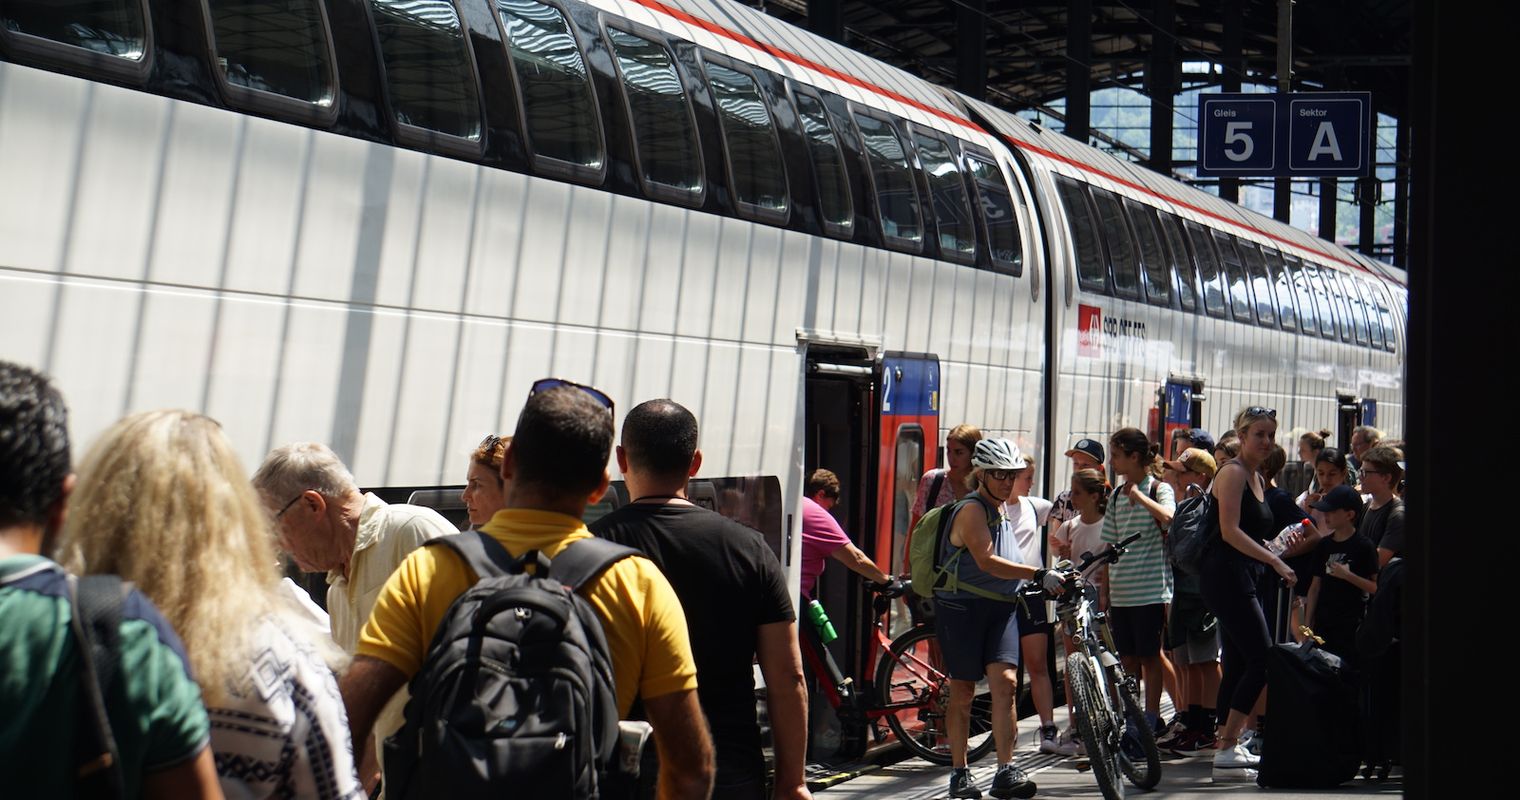 Kontrolleur findet ausgebüxten Teenager im Zürich-Zug